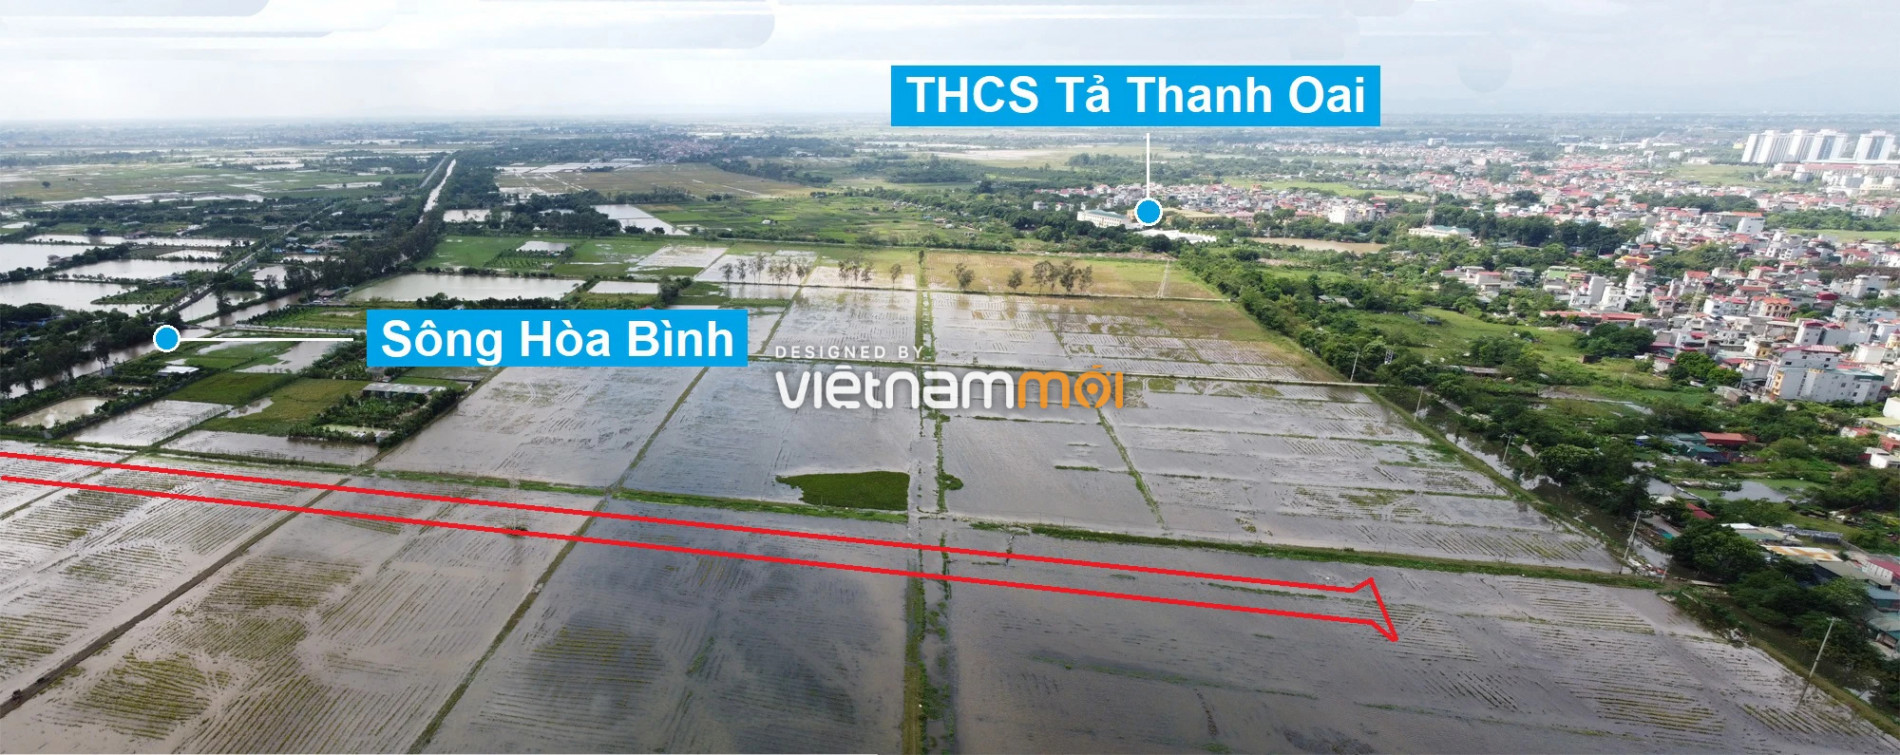 Những khu đất sắp thu hồi để mở đường ở xã Tả Thanh Oai, Thanh Trì, Hà Nội (phần 4) - Ảnh 17.